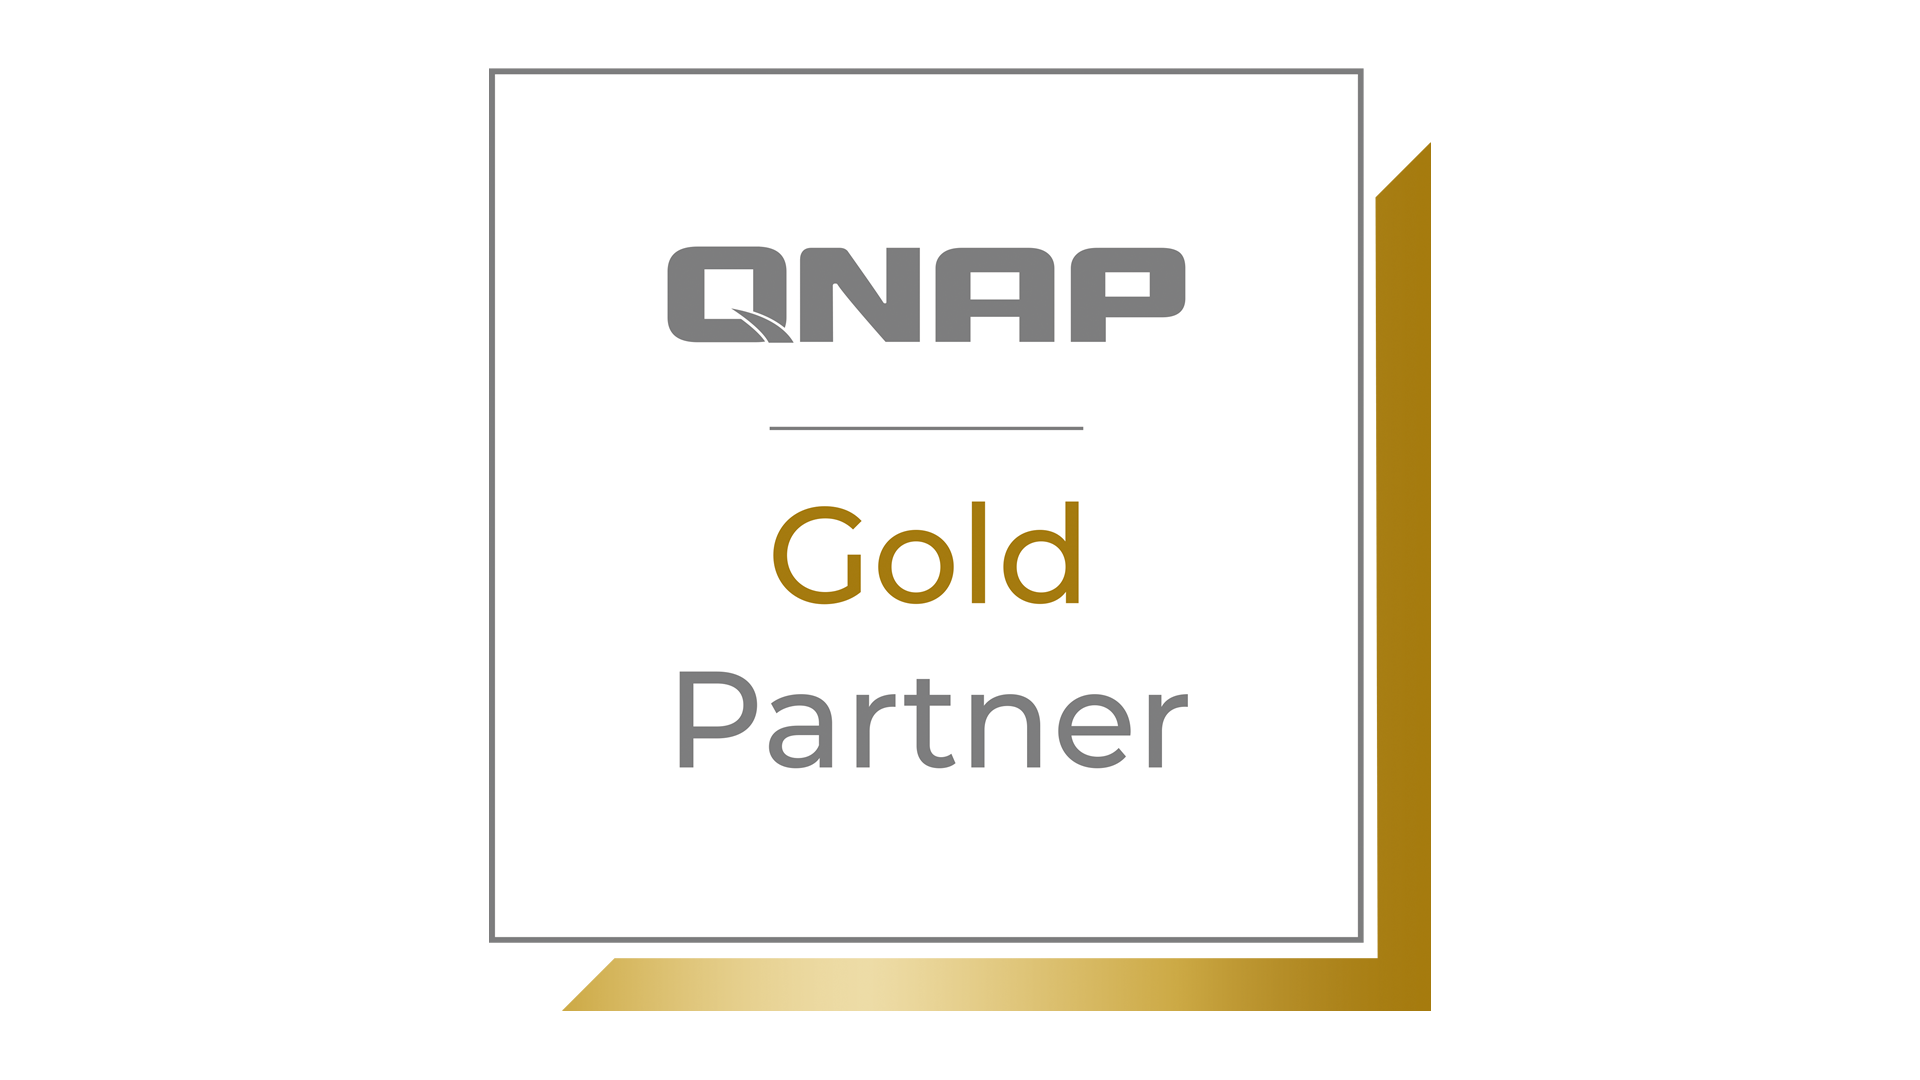 Gold Partner QNAP